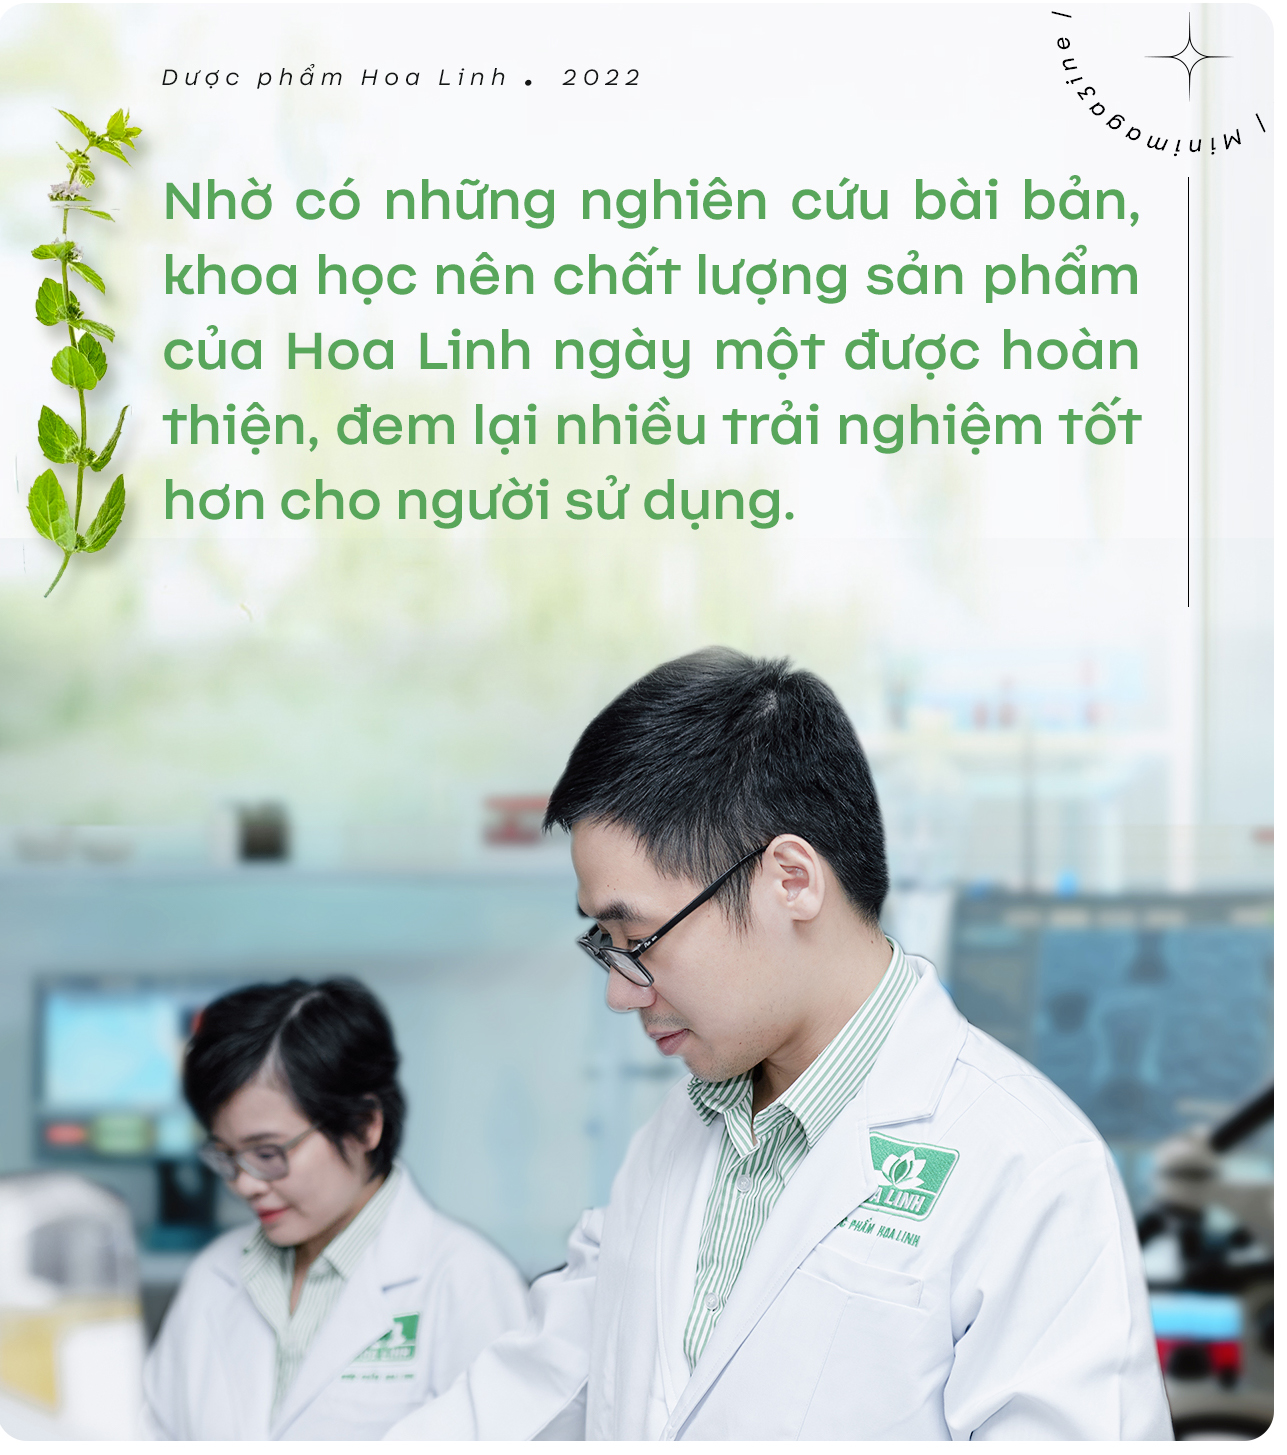 Dược phẩm Hoa Linh: Hướng tới các sản phẩm dược mỹ phẩm của tương lai - Ảnh 5.